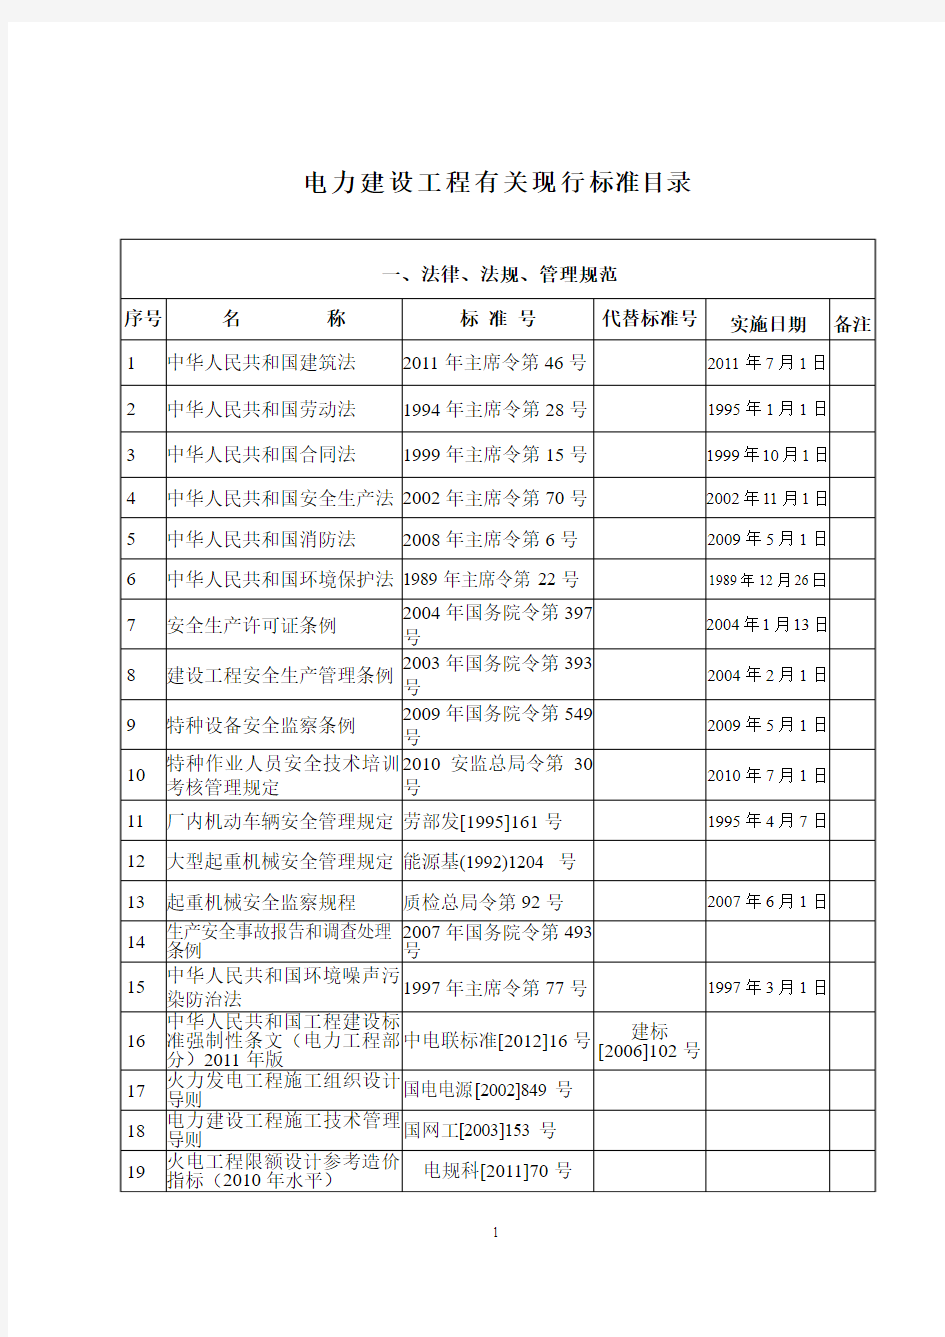 2014年版电力标准目录清单(土建)